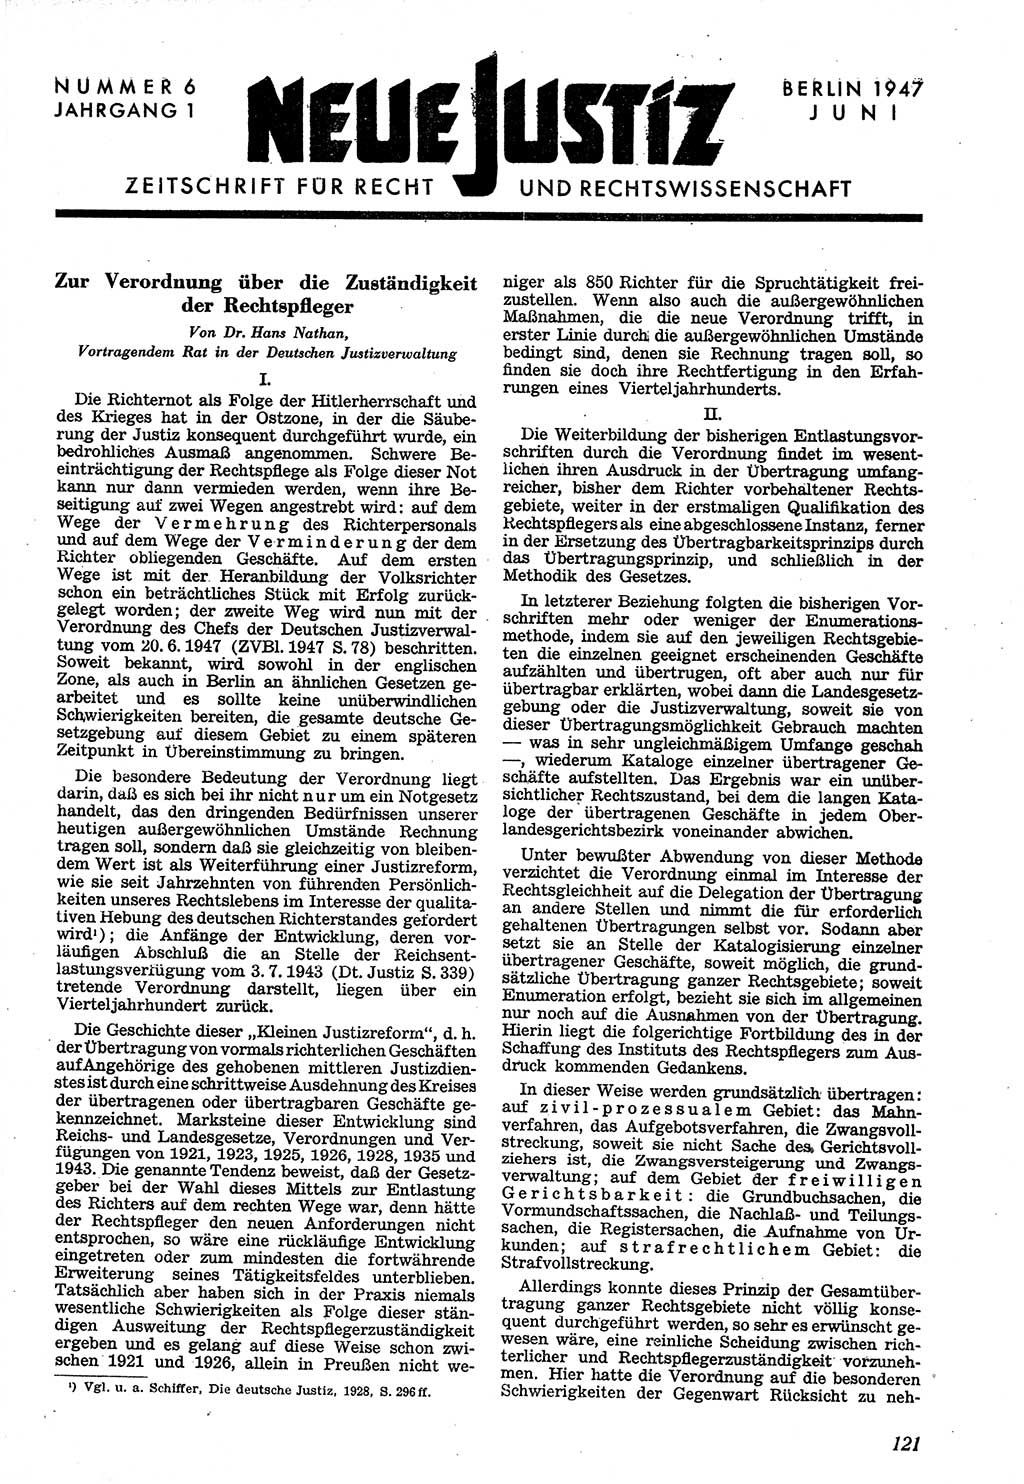 Neue Justiz (NJ), Zeitschrift für Recht und Rechtswissenschaft [Sowjetische Besatzungszone (SBZ) Deutschland], 1. Jahrgang 1947, Seite 121 (NJ SBZ Dtl. 1947, S. 121)